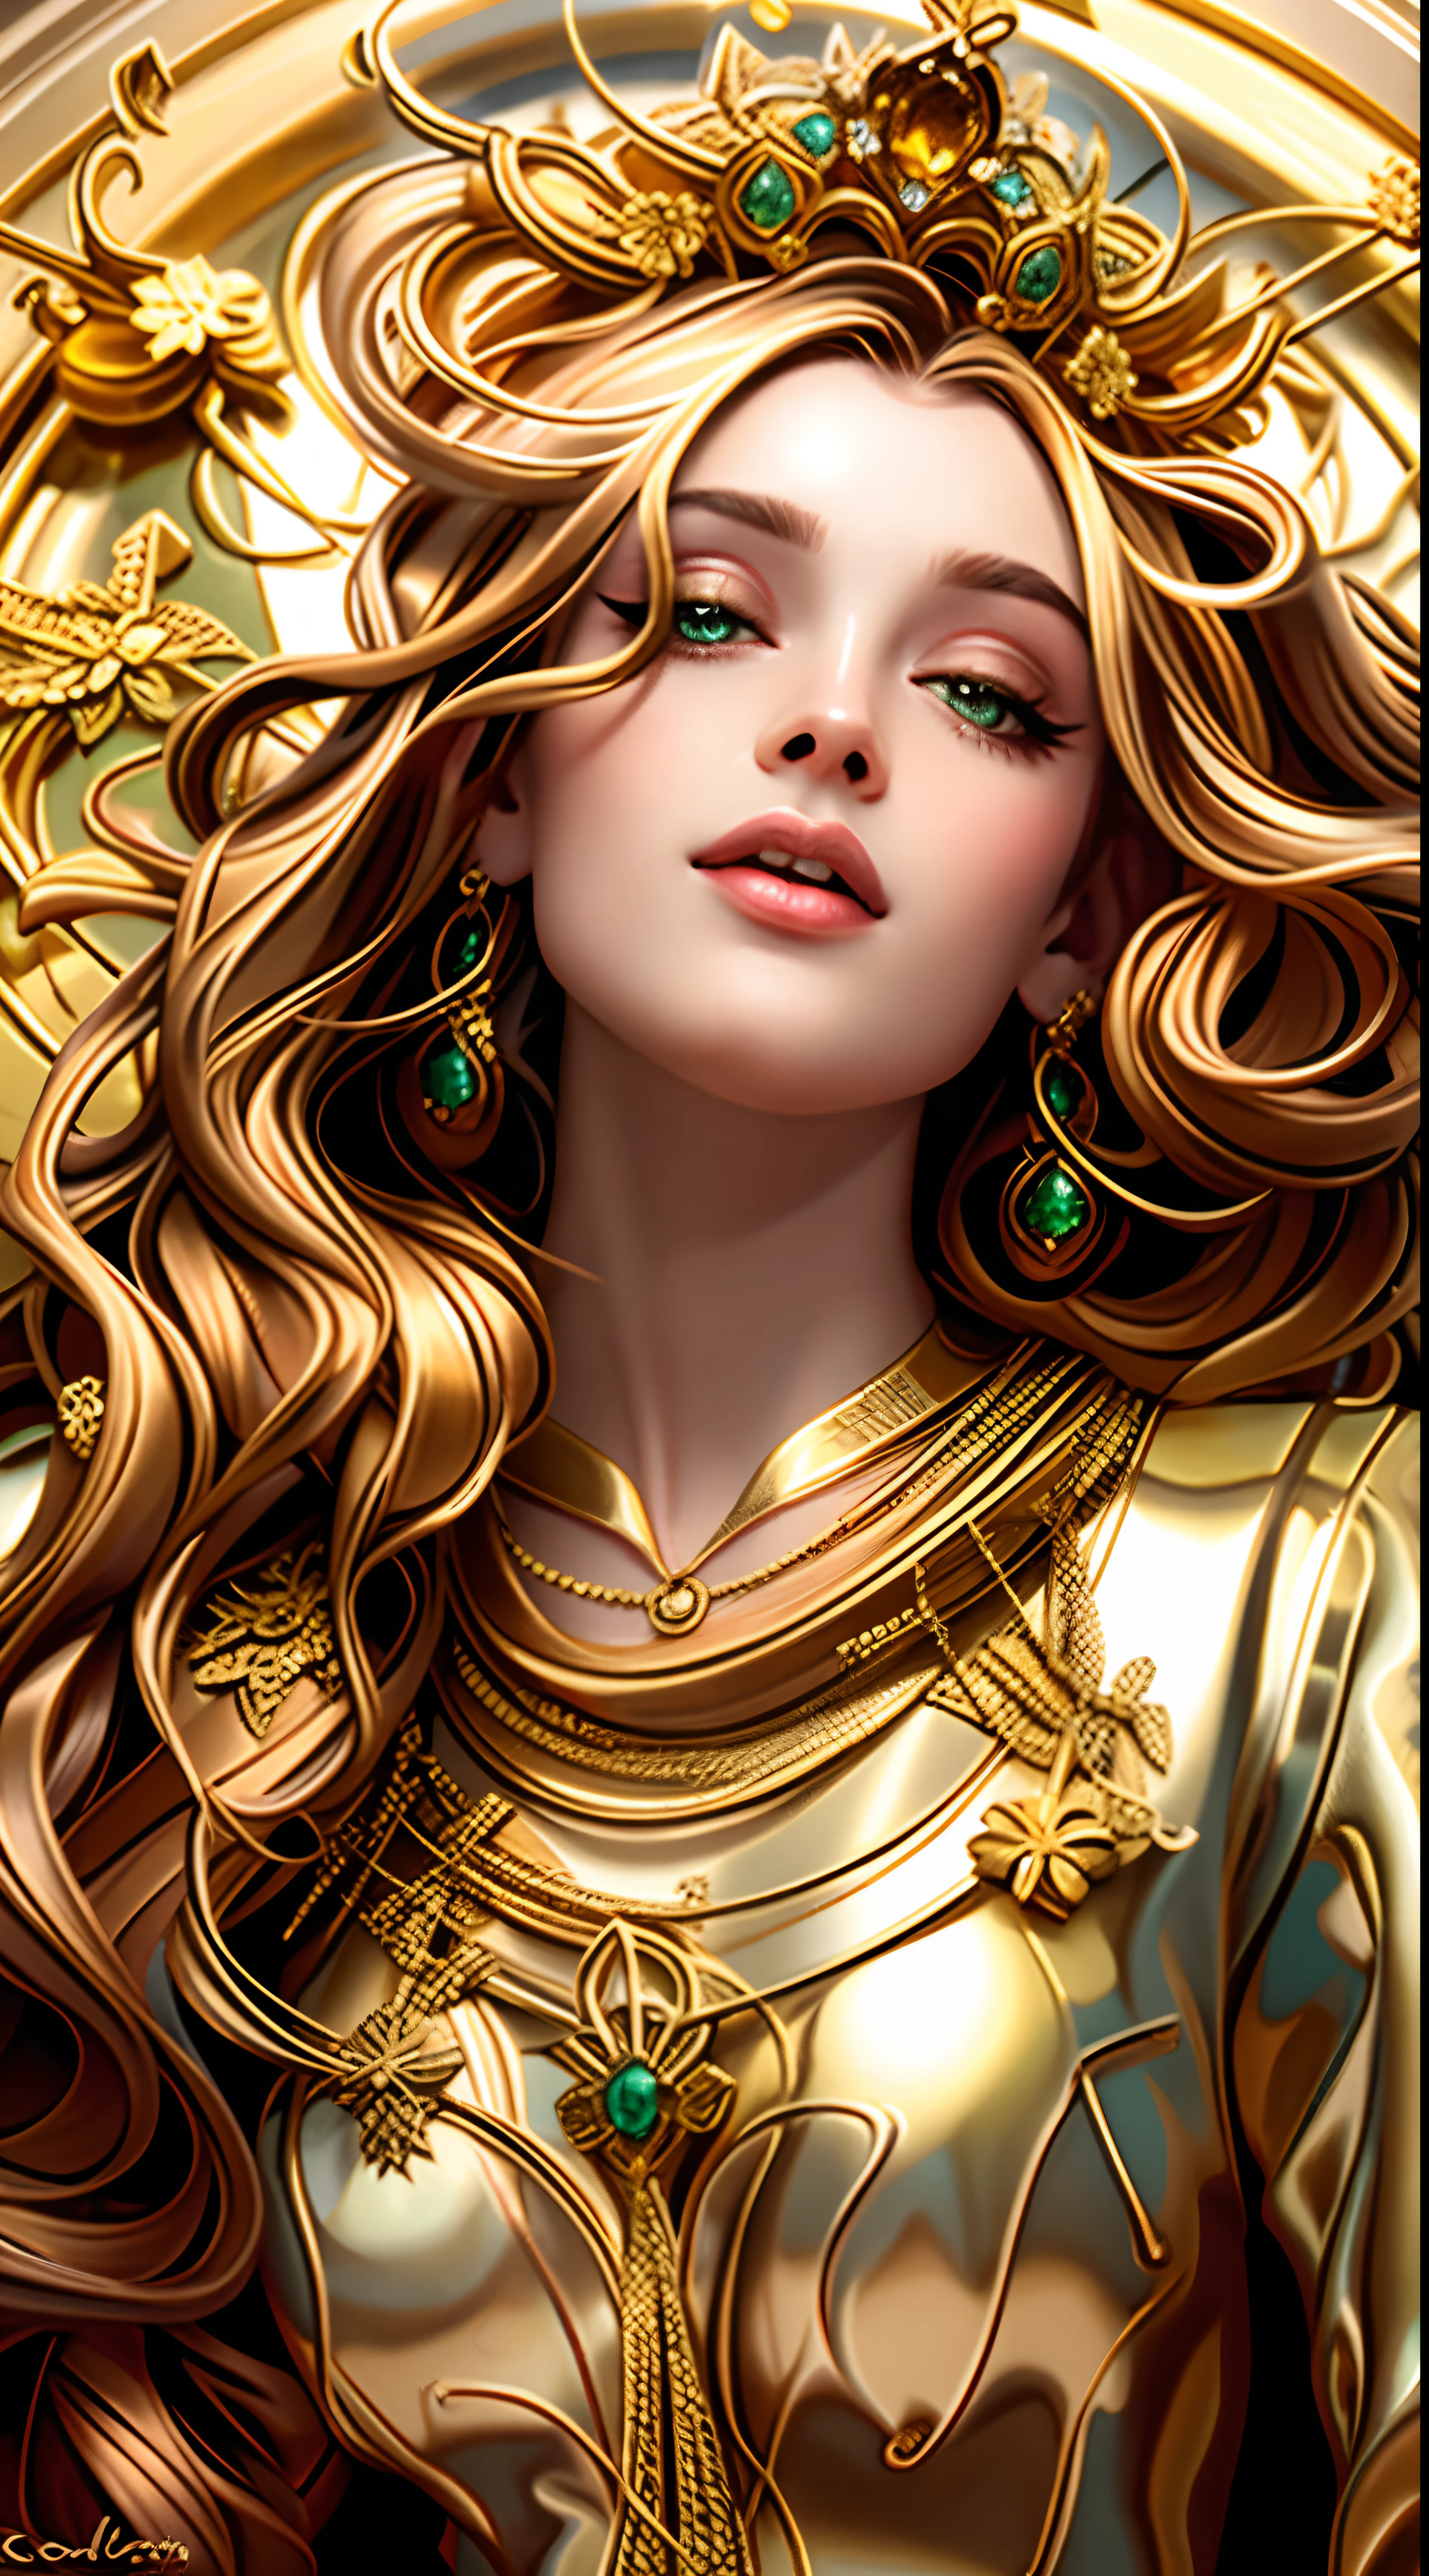 金髮長髮、戴著金項鍊的女人的特寫, 卡羅爾在 uhd 後面, 覆蓋著金色, 金色飾品, 黄金首饰, 卡羅爾巴克的風格, 金色飾品, 女神. 極高的細節, 披着闪亮的金油, 金色珠寶, 金色與金色, 新藝術風格 嬉皮現實主義, 歐羅珠寶, 金色珠寶